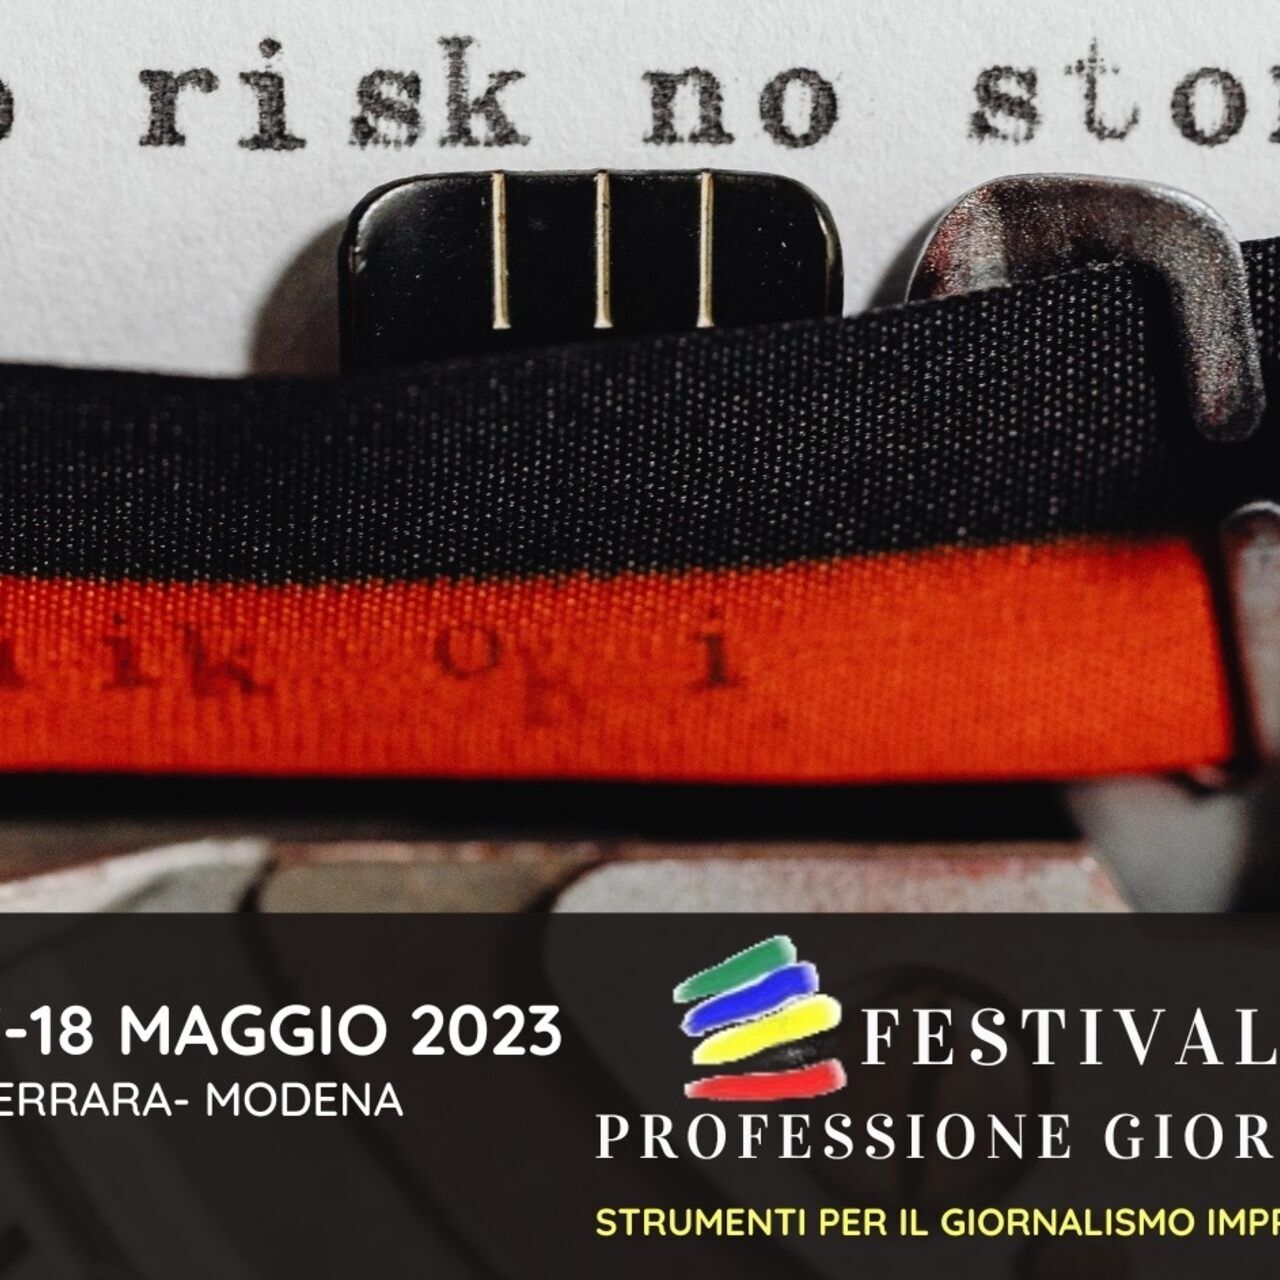 Az újságíró hivatása: a "Professione Giornalista" fesztivál 2023-as kiadásának kulcsképe (Bologna, Ferrara, Modena, május 15-16-17-18)